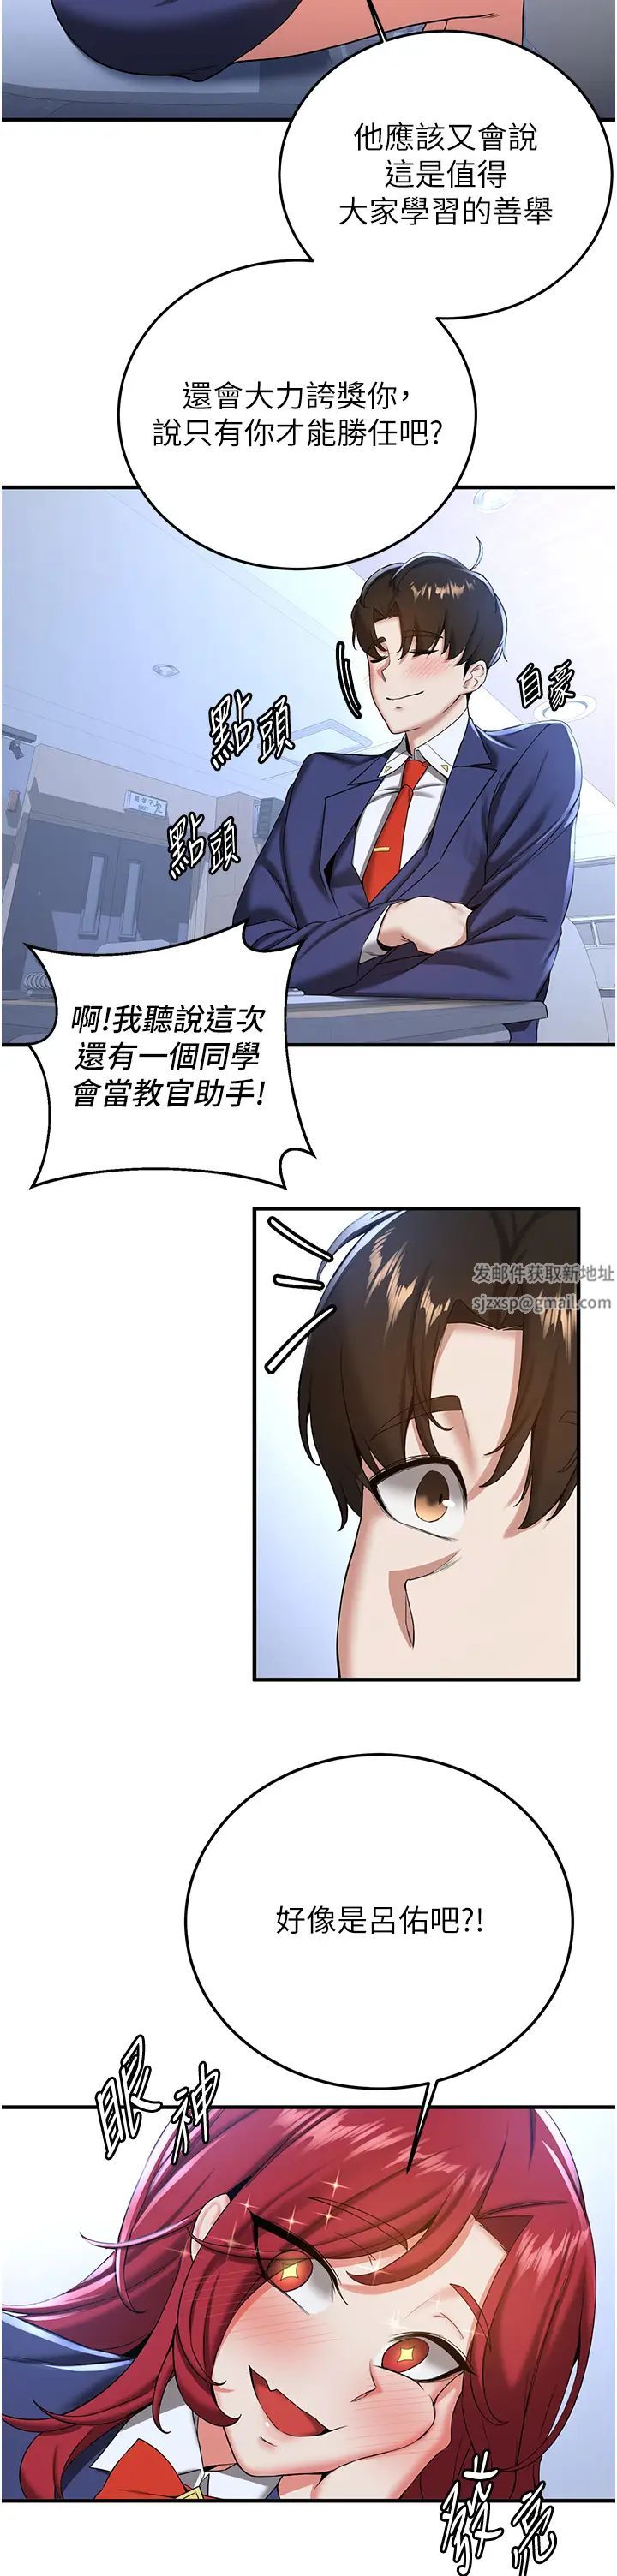 《搶女友速成班》在线观看 第21话-被榨乾精液的王吕佑 漫画图片5